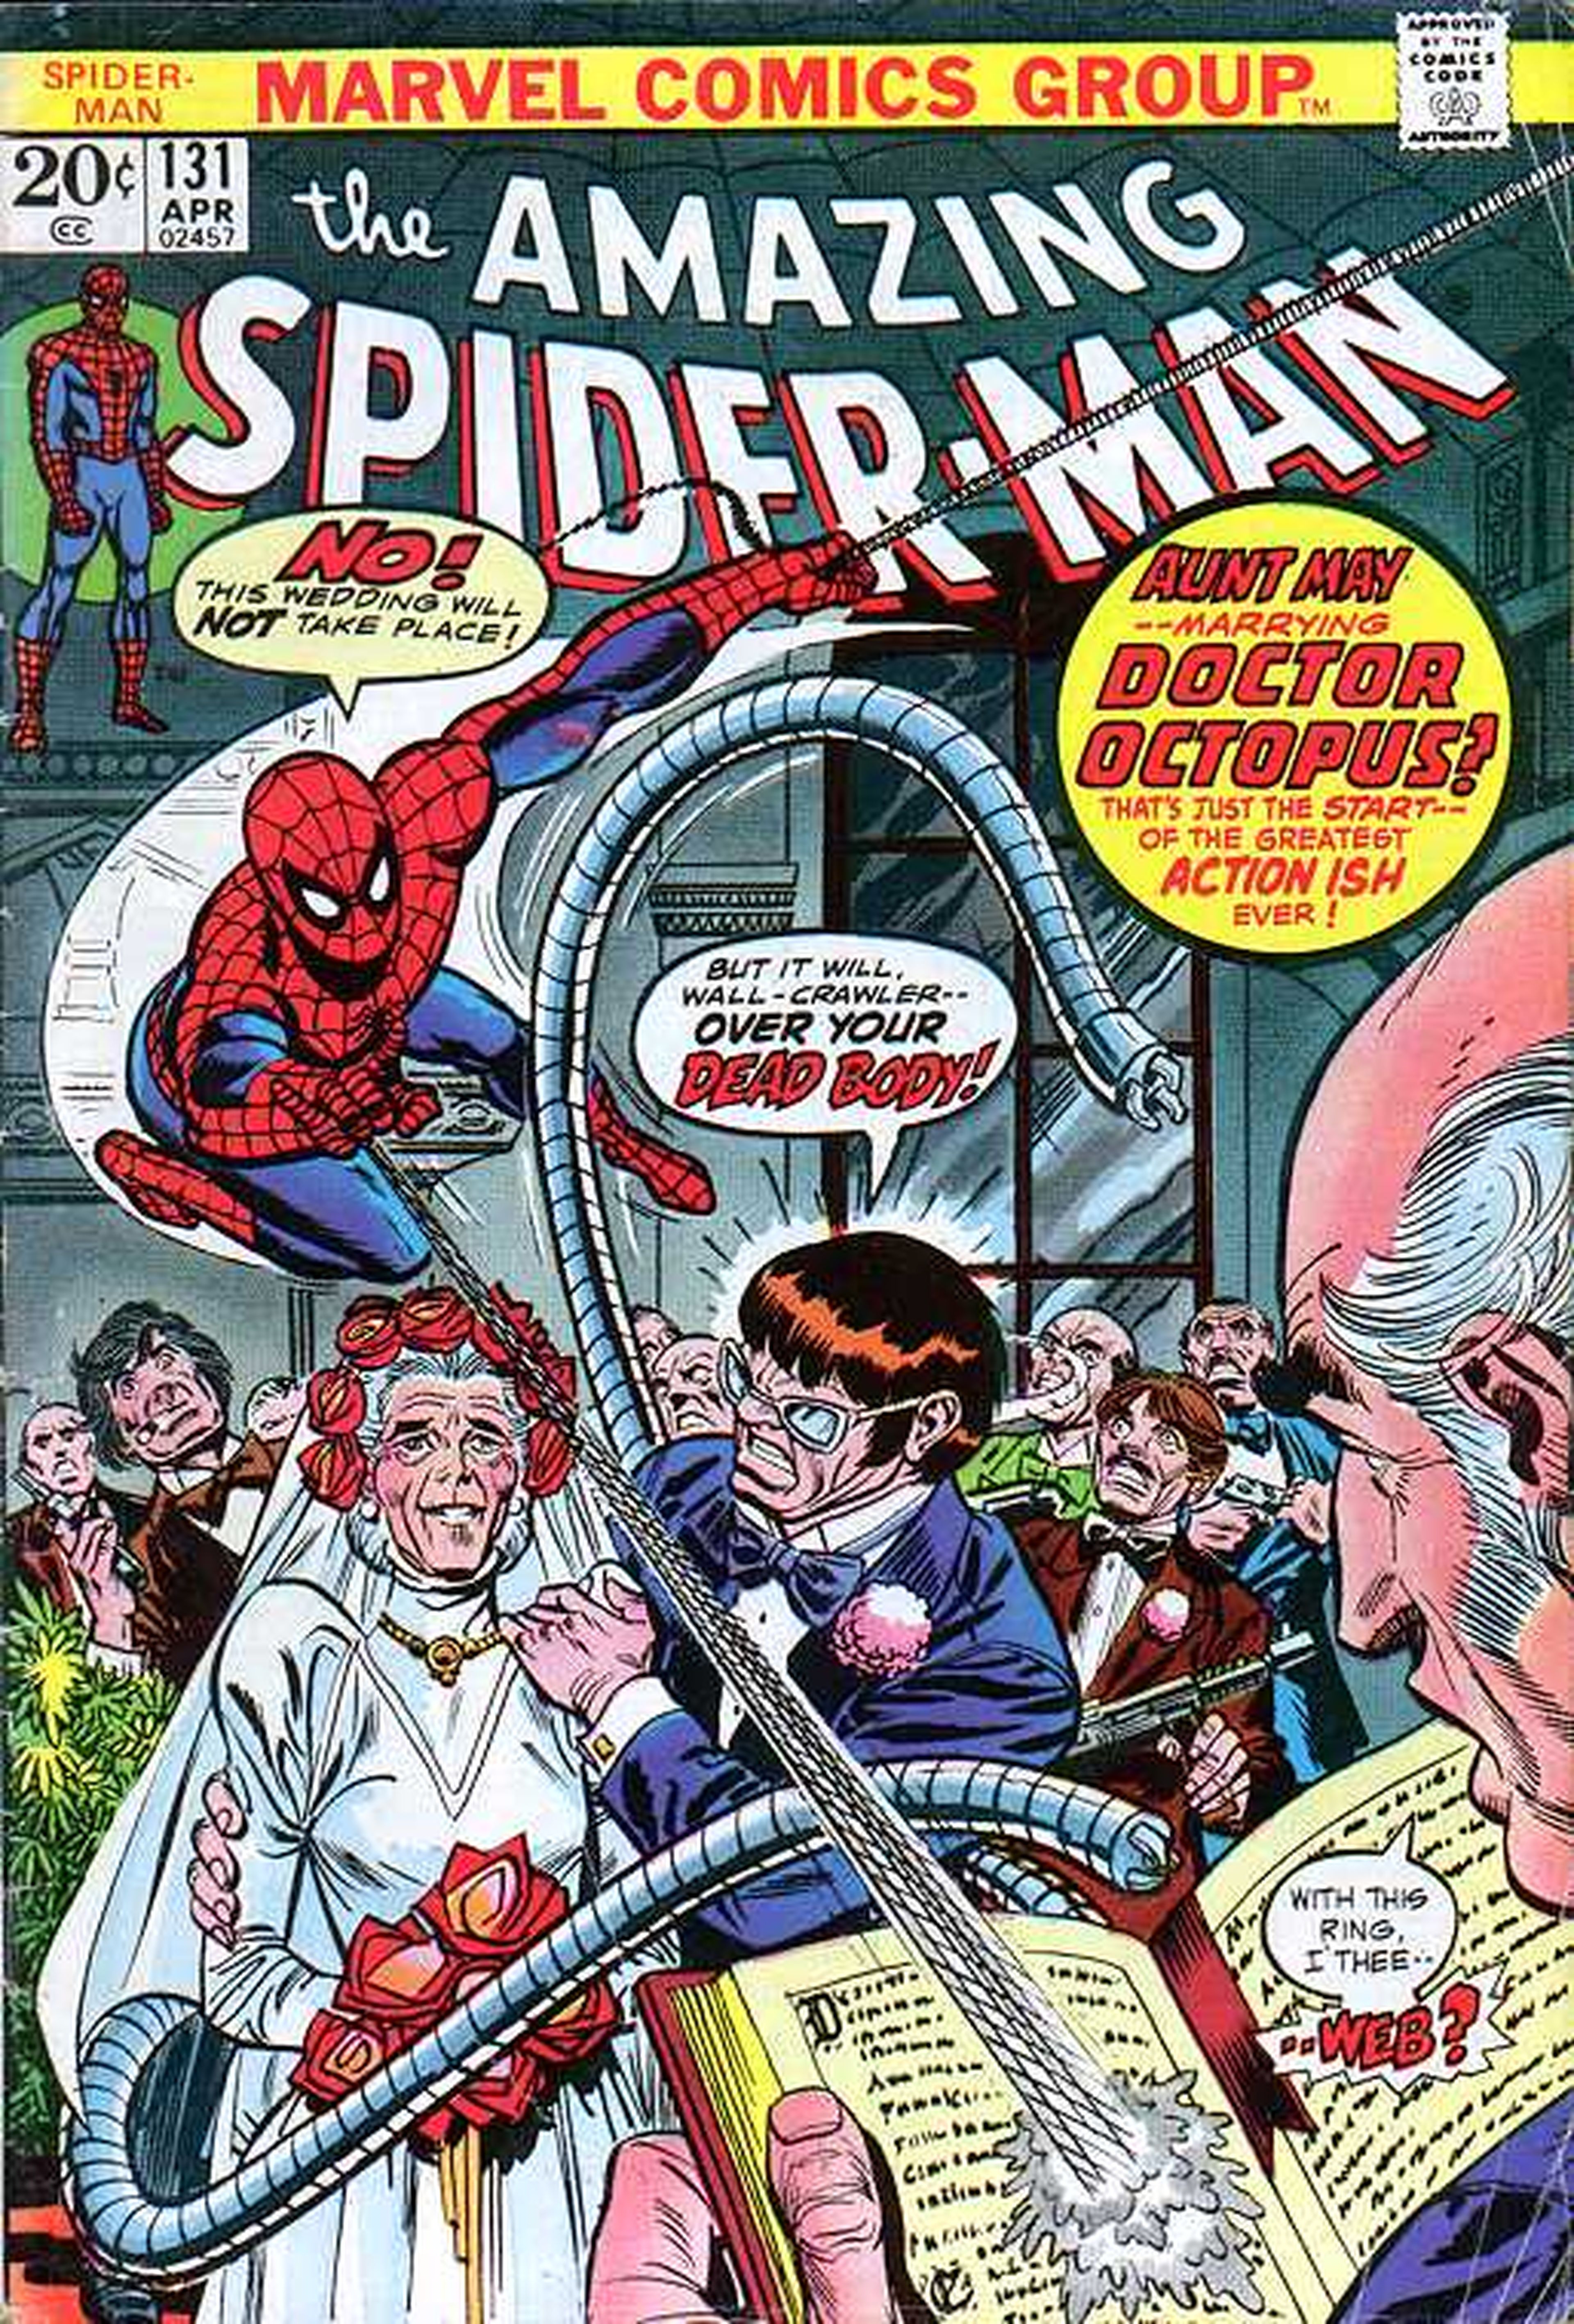 EEUU: A Superior Spider-man le raptan una ex-novia